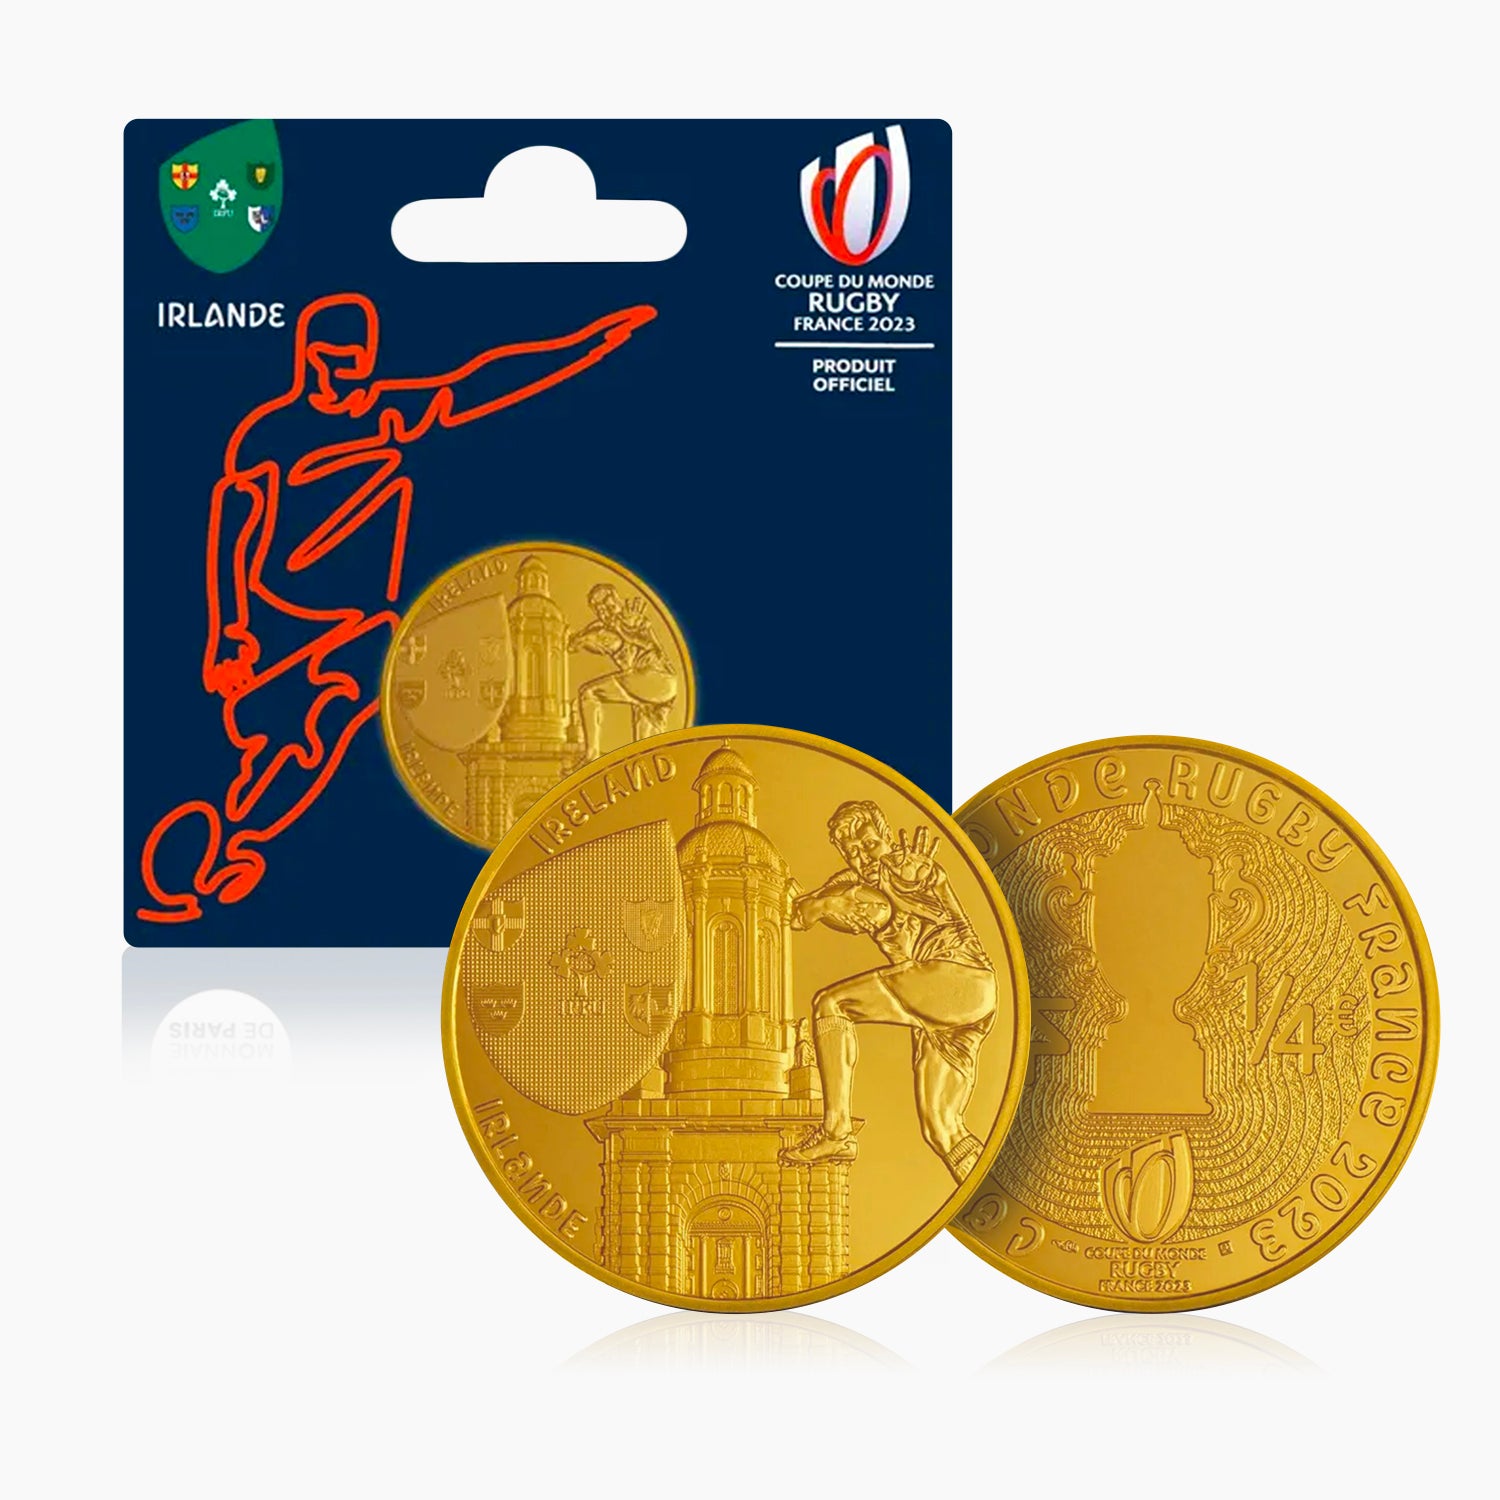 2023年ラグビーワールドカップアイルランドチーム公式コイン